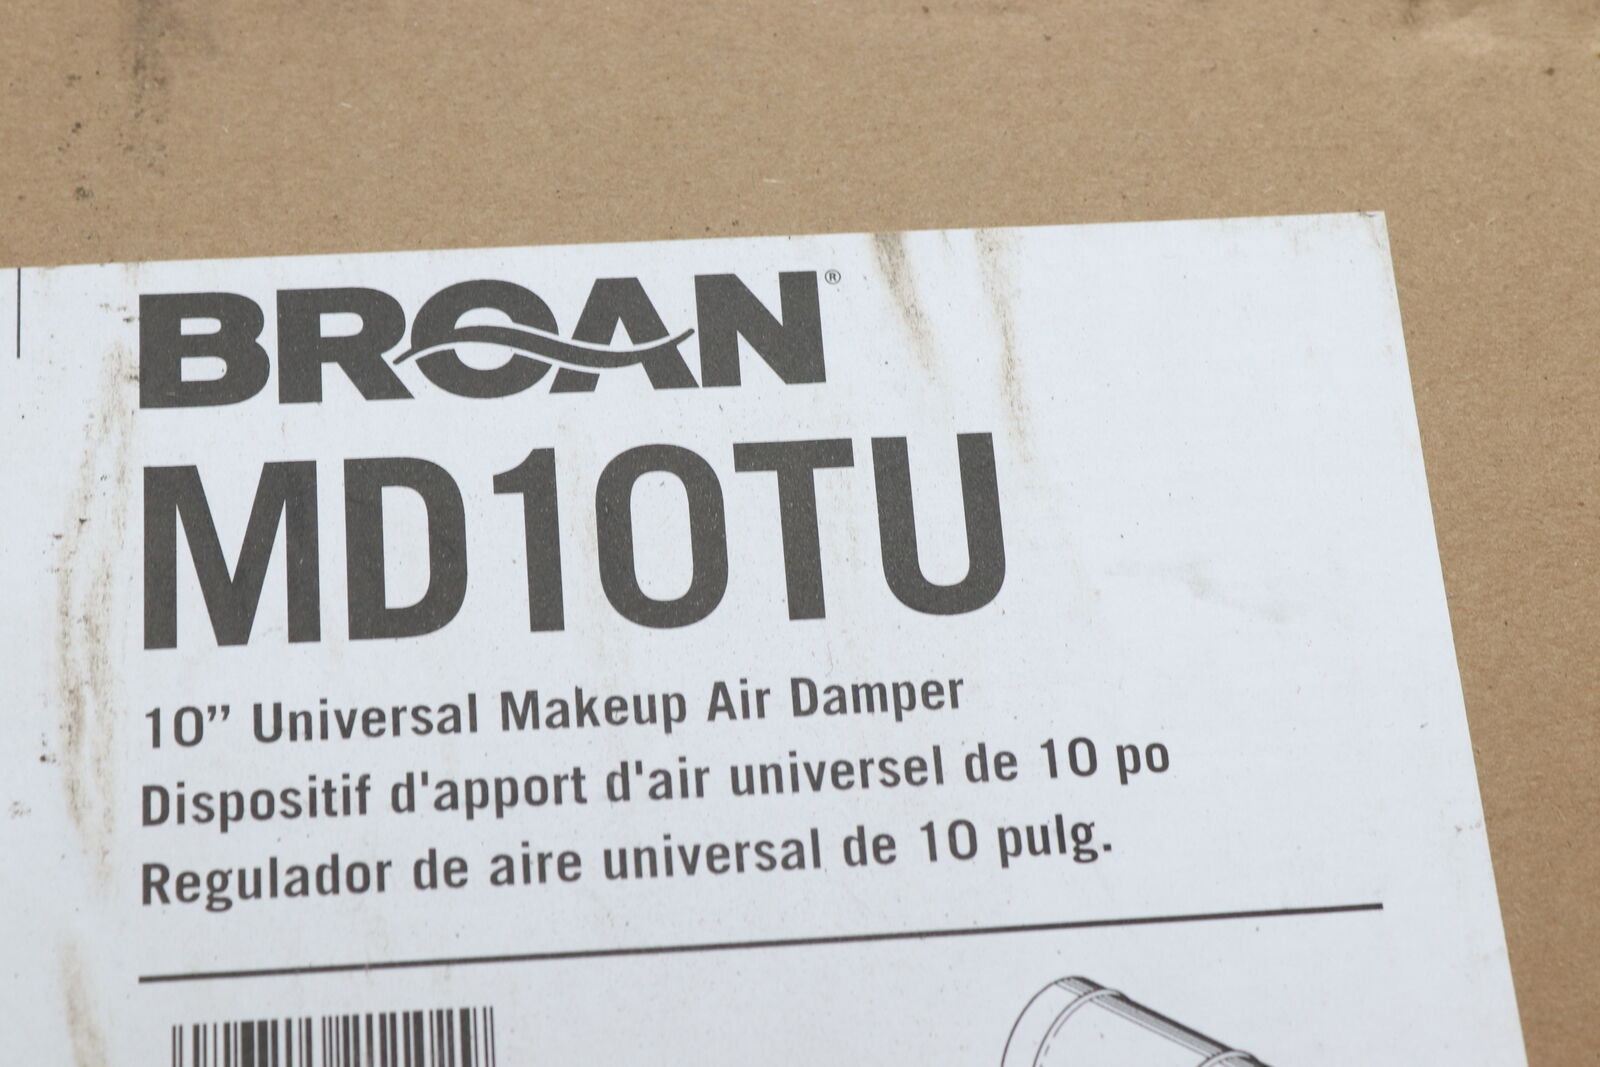 Broan Universal Makeup Air Damper For Vent Hood 10" Md10tu